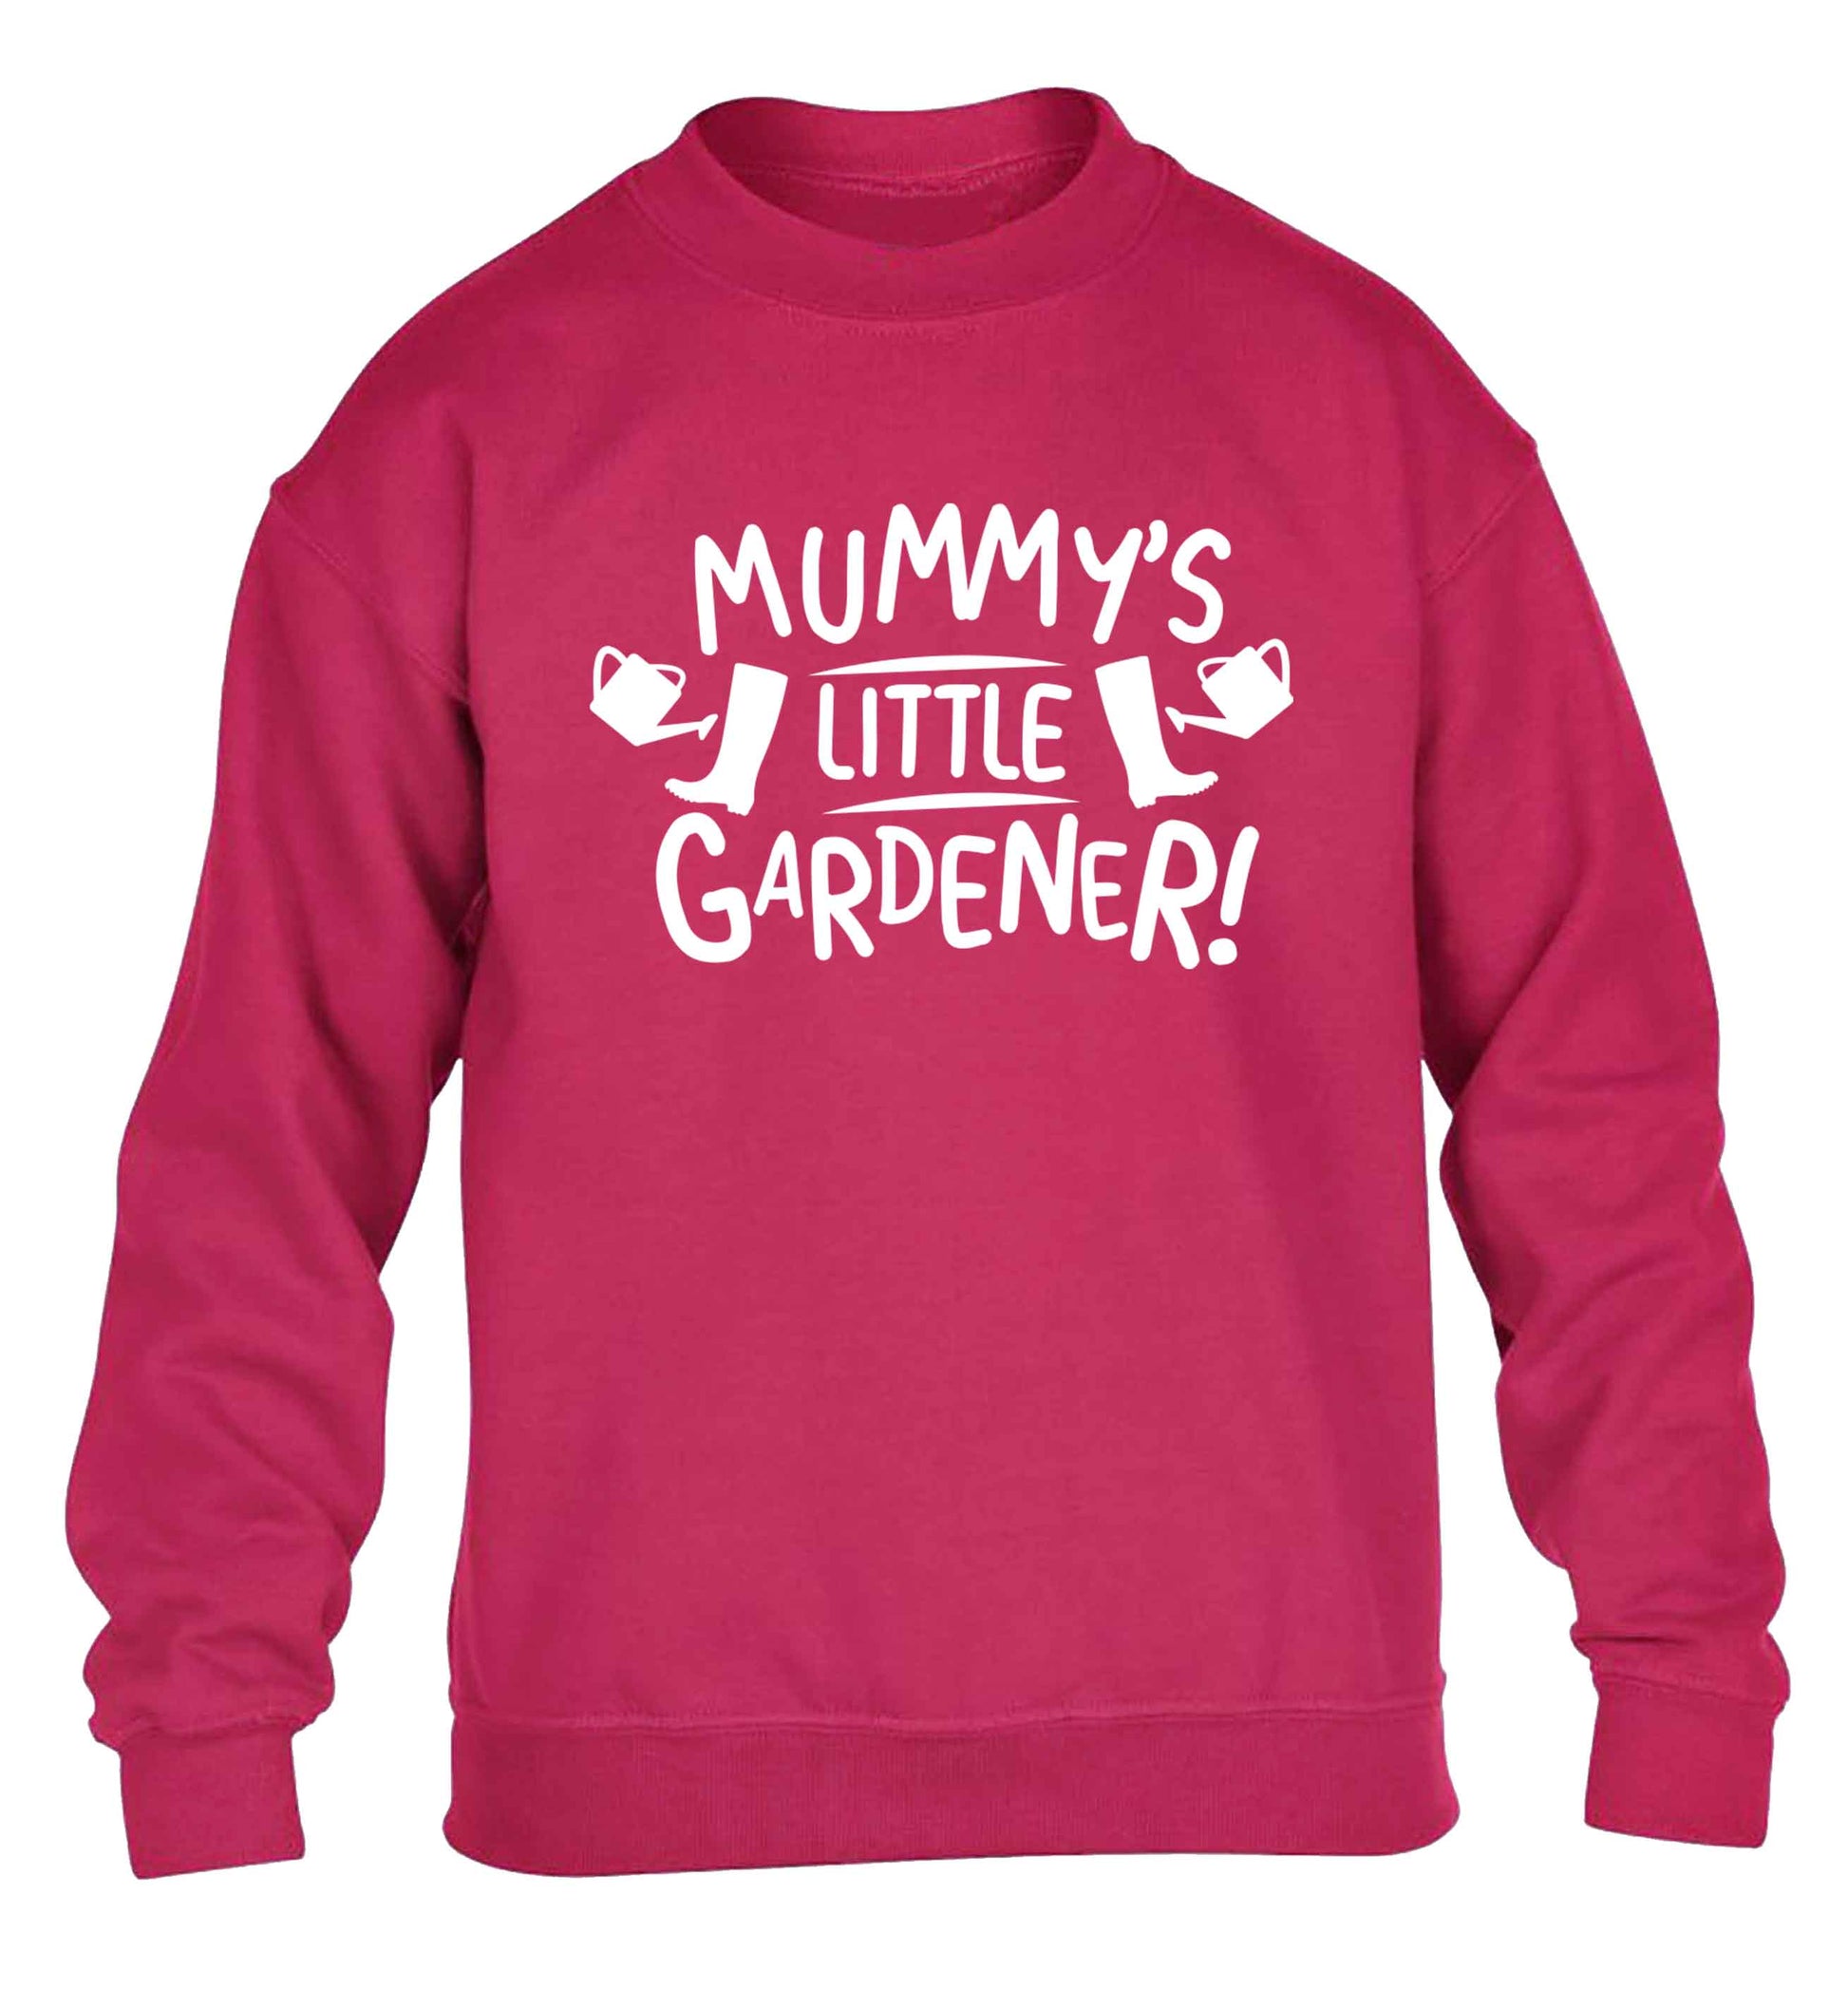 Mummy's little gardener children's pink sweater 12-13 Years